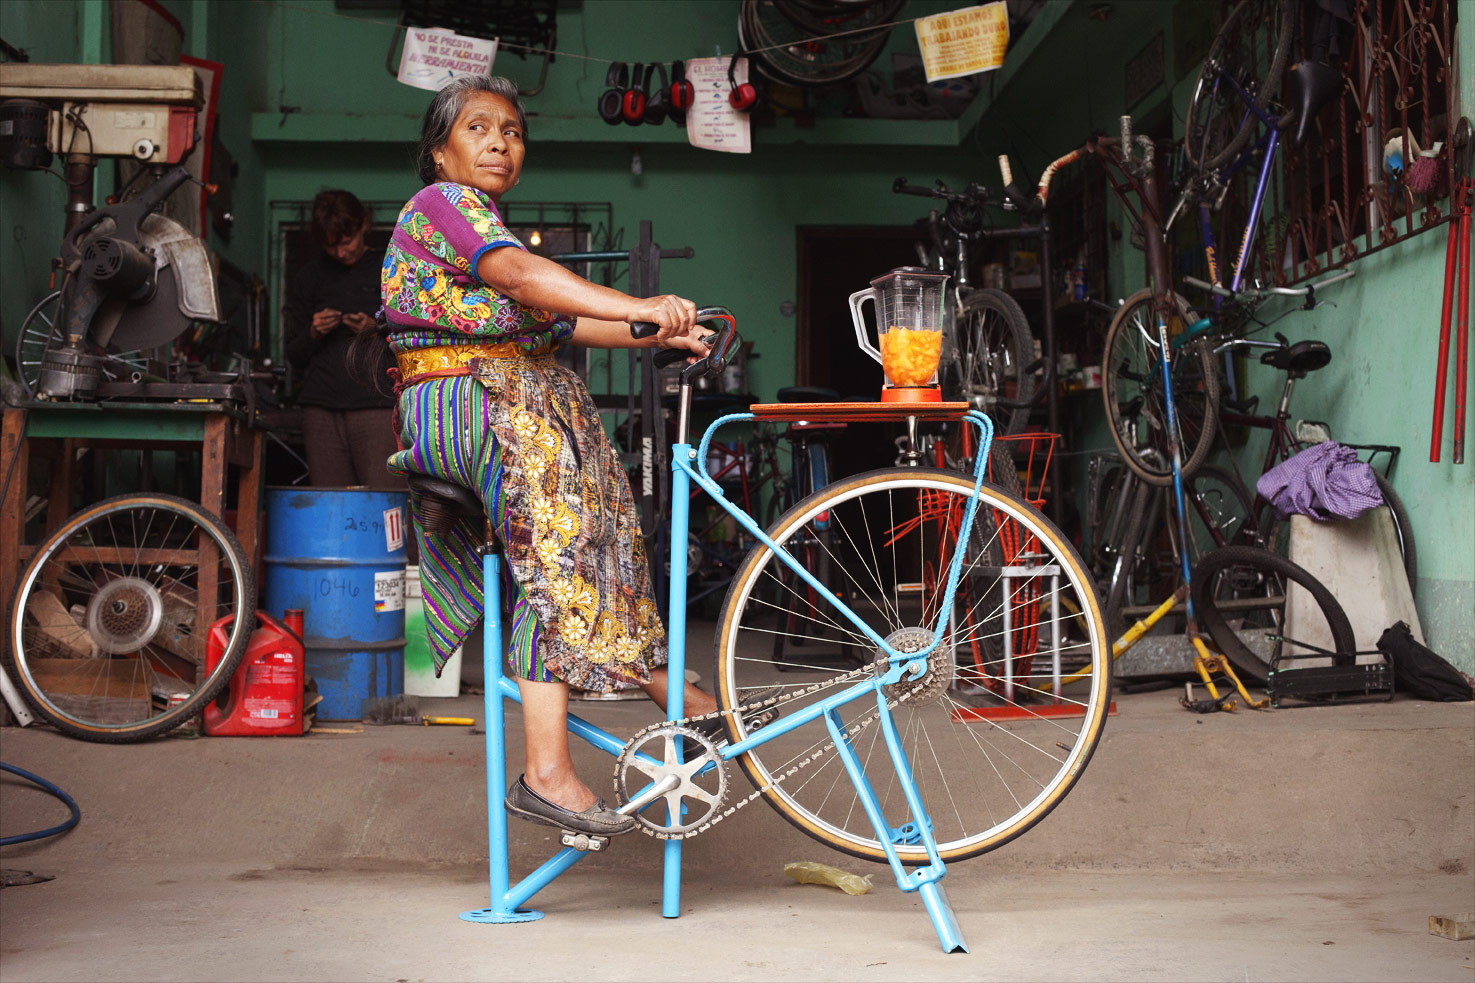 Kinh nghiệm mua xe đạp trẻ em cũ chất lượng  King Bicycle  Vua xe đạp  nhật bãi tại Hà Nội 0983388185